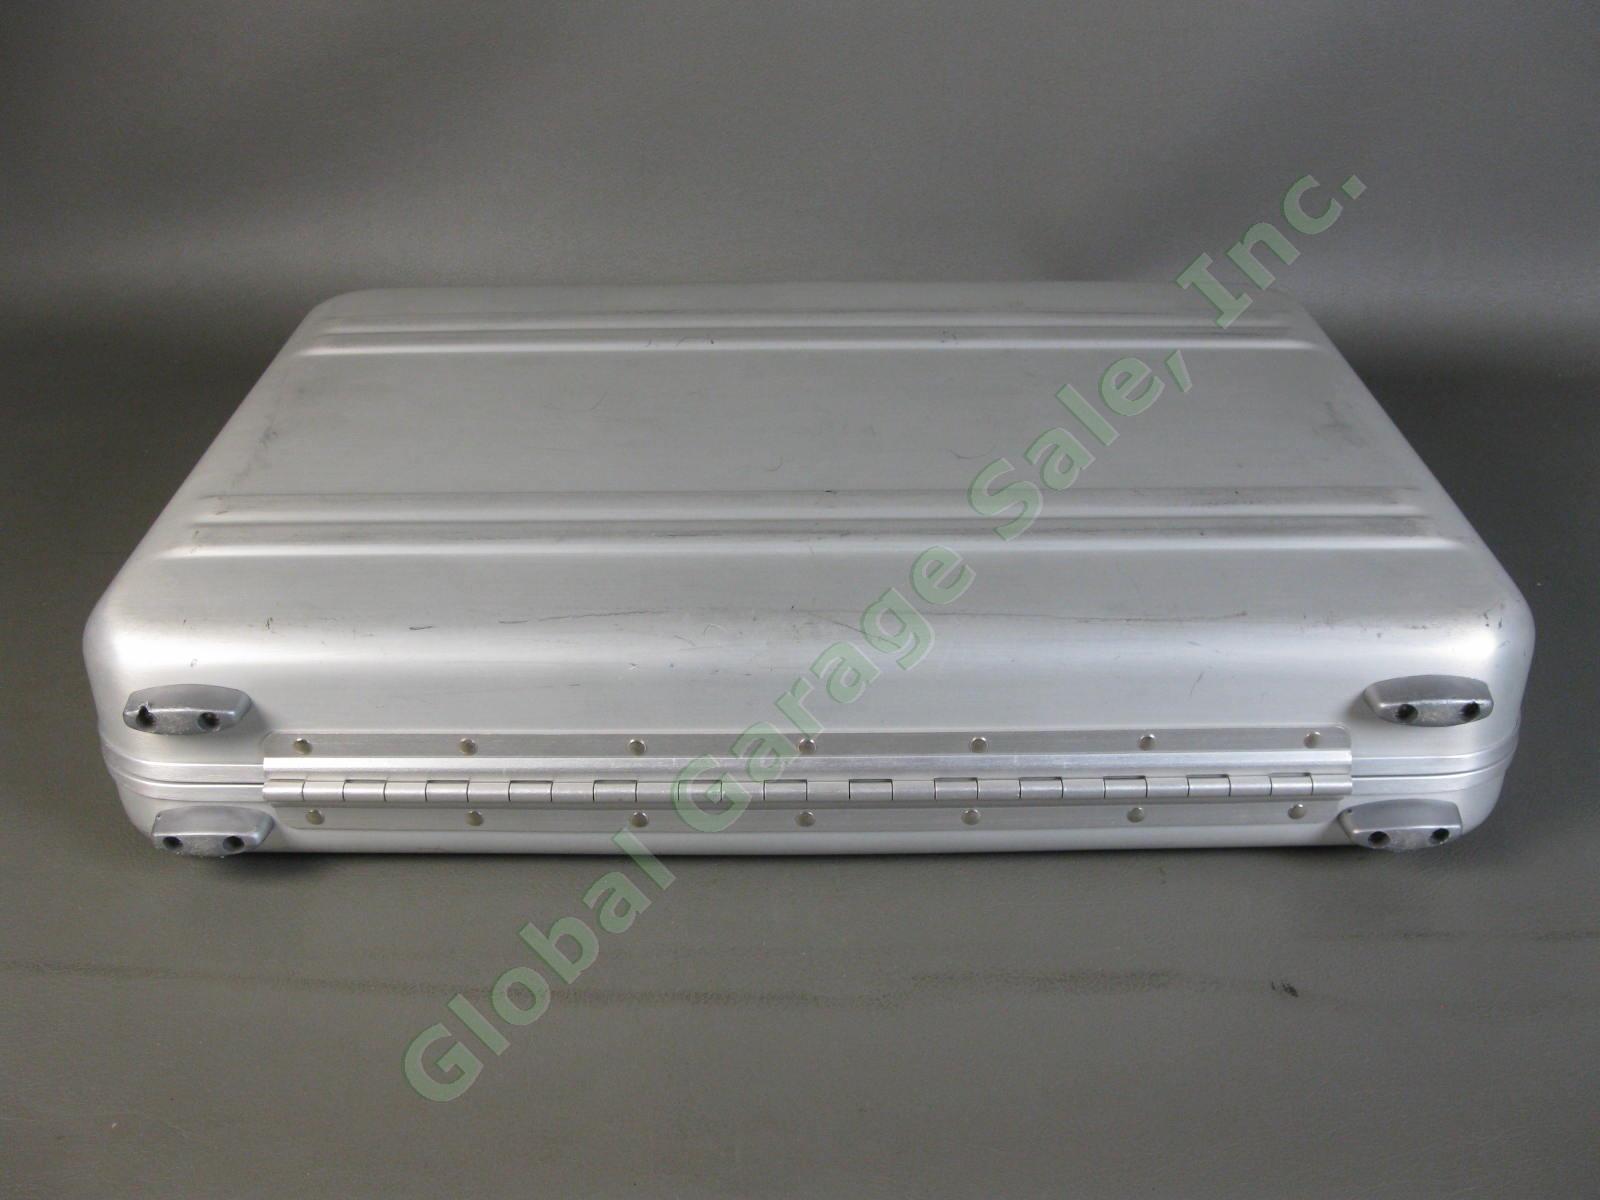 Halliburton ZERO Aluminum Briefcase 18"x13"x3" Combo Lock Excellent Condition NR 6